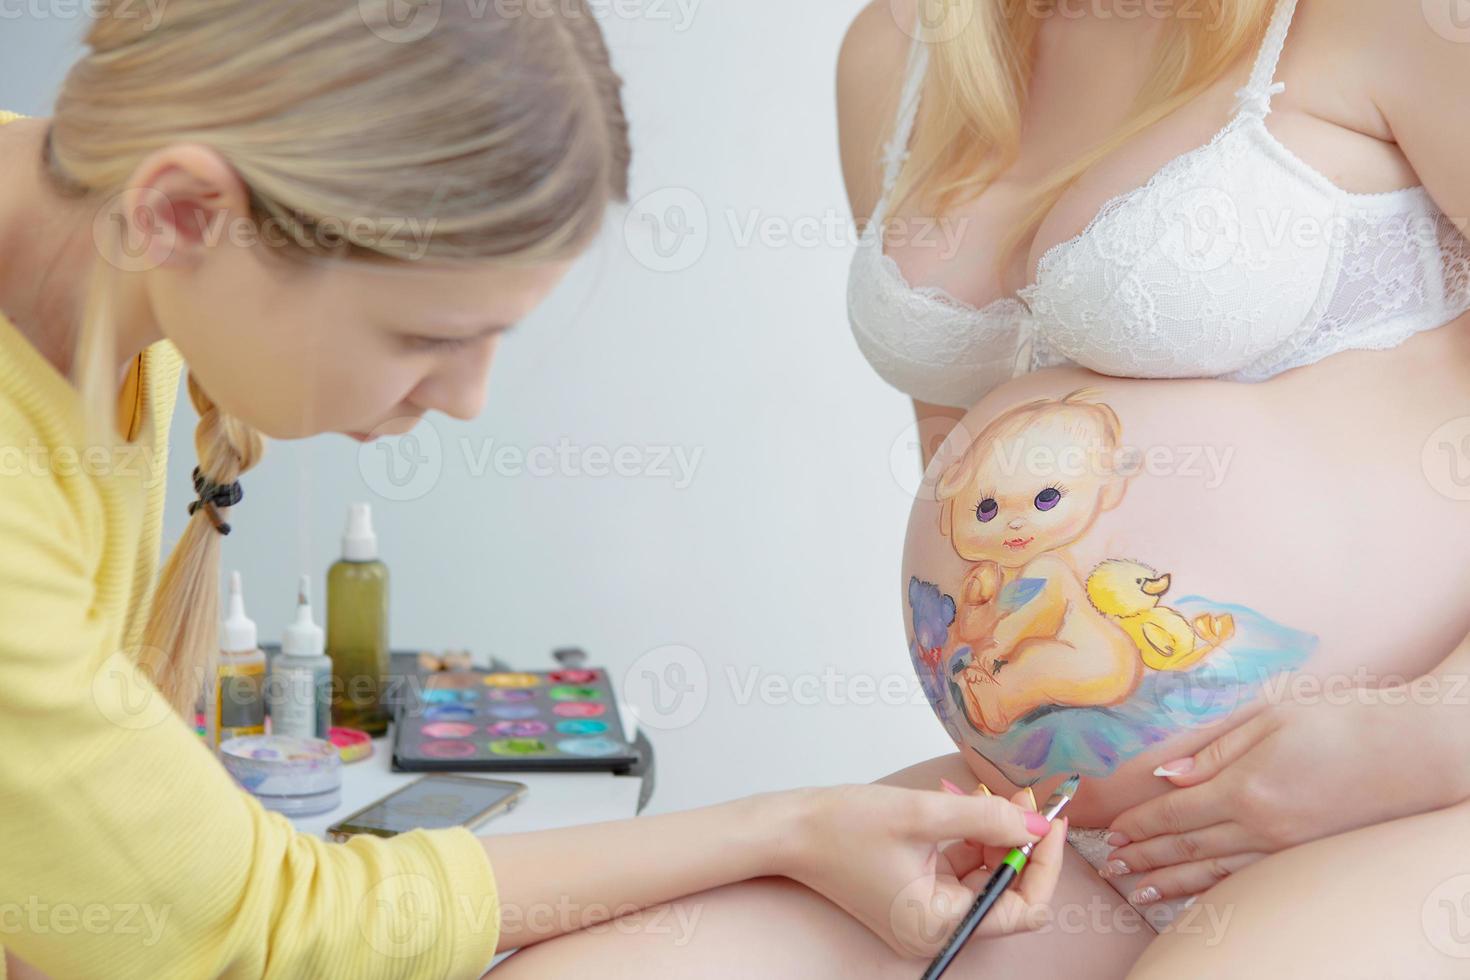 charmant maquillage artiste dessine une bambin sur le ventre photo